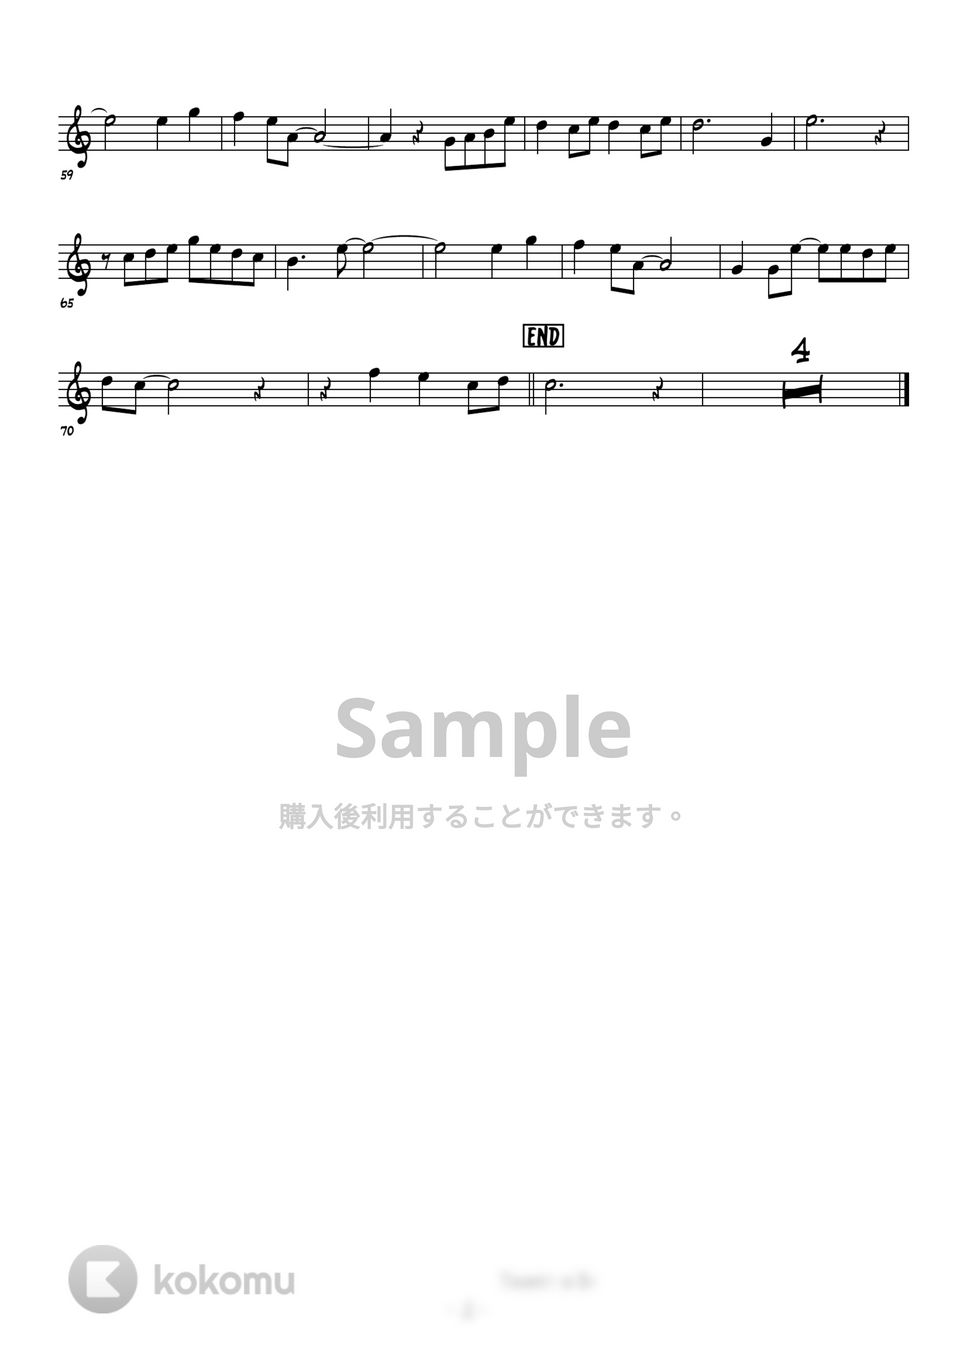 美空ひばり - 川の流れのように (トランペットメロディー楽譜) by 高田将利